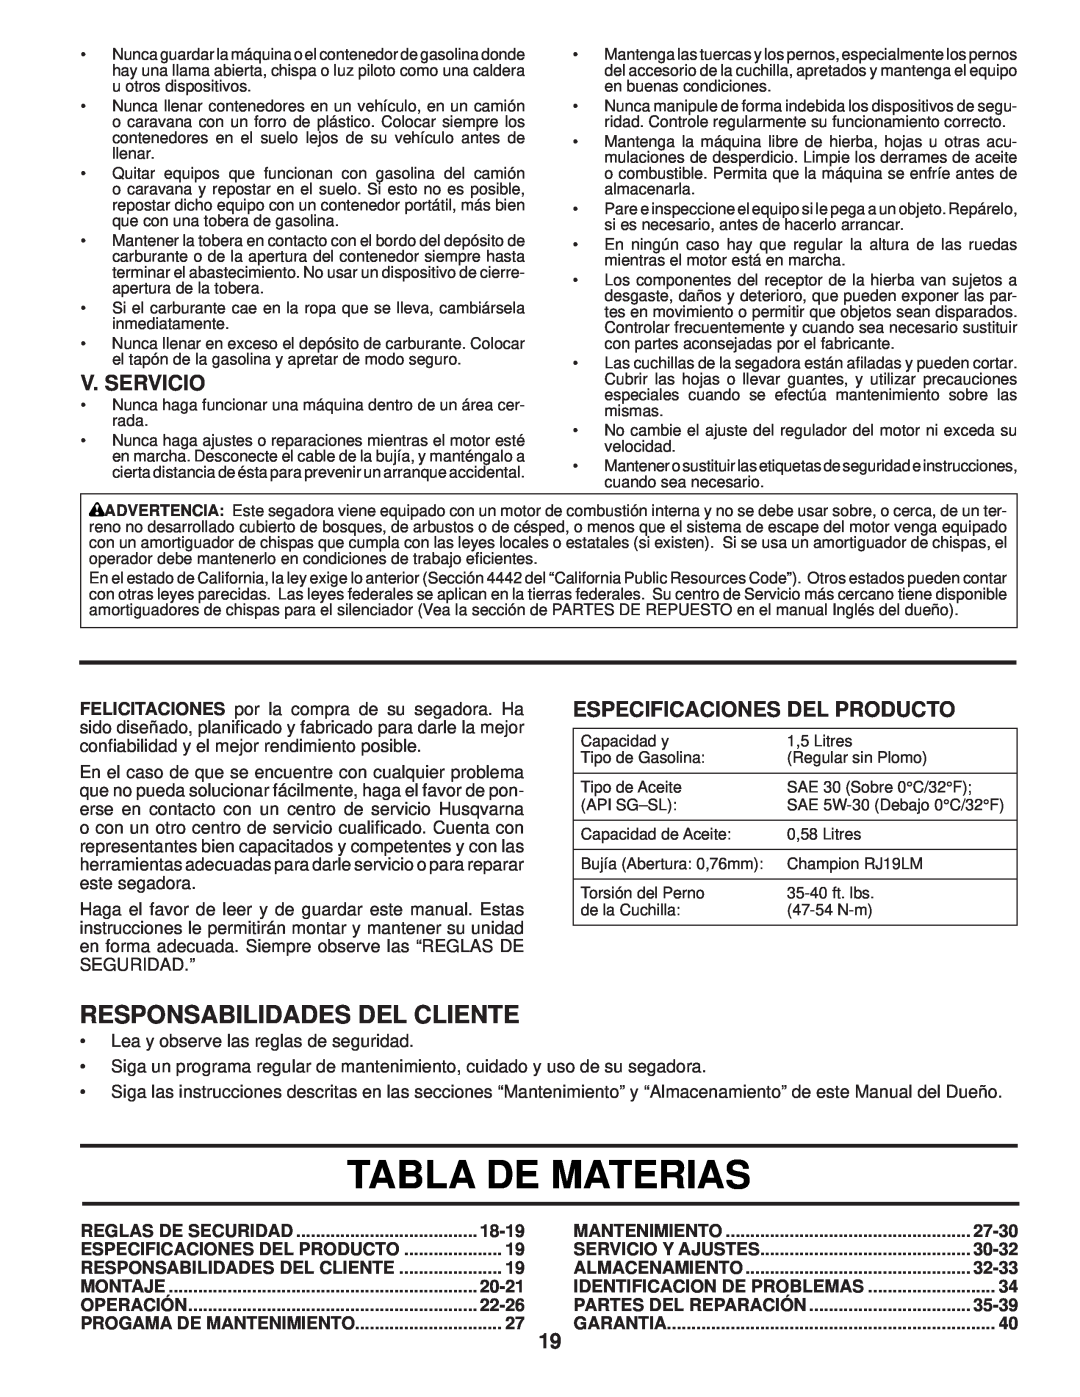 Husqvarna 87521HVE Tabla De Materias, Responsabilidades Del Cliente, V. Servicio, Especificaciones Del Producto, 18-19 